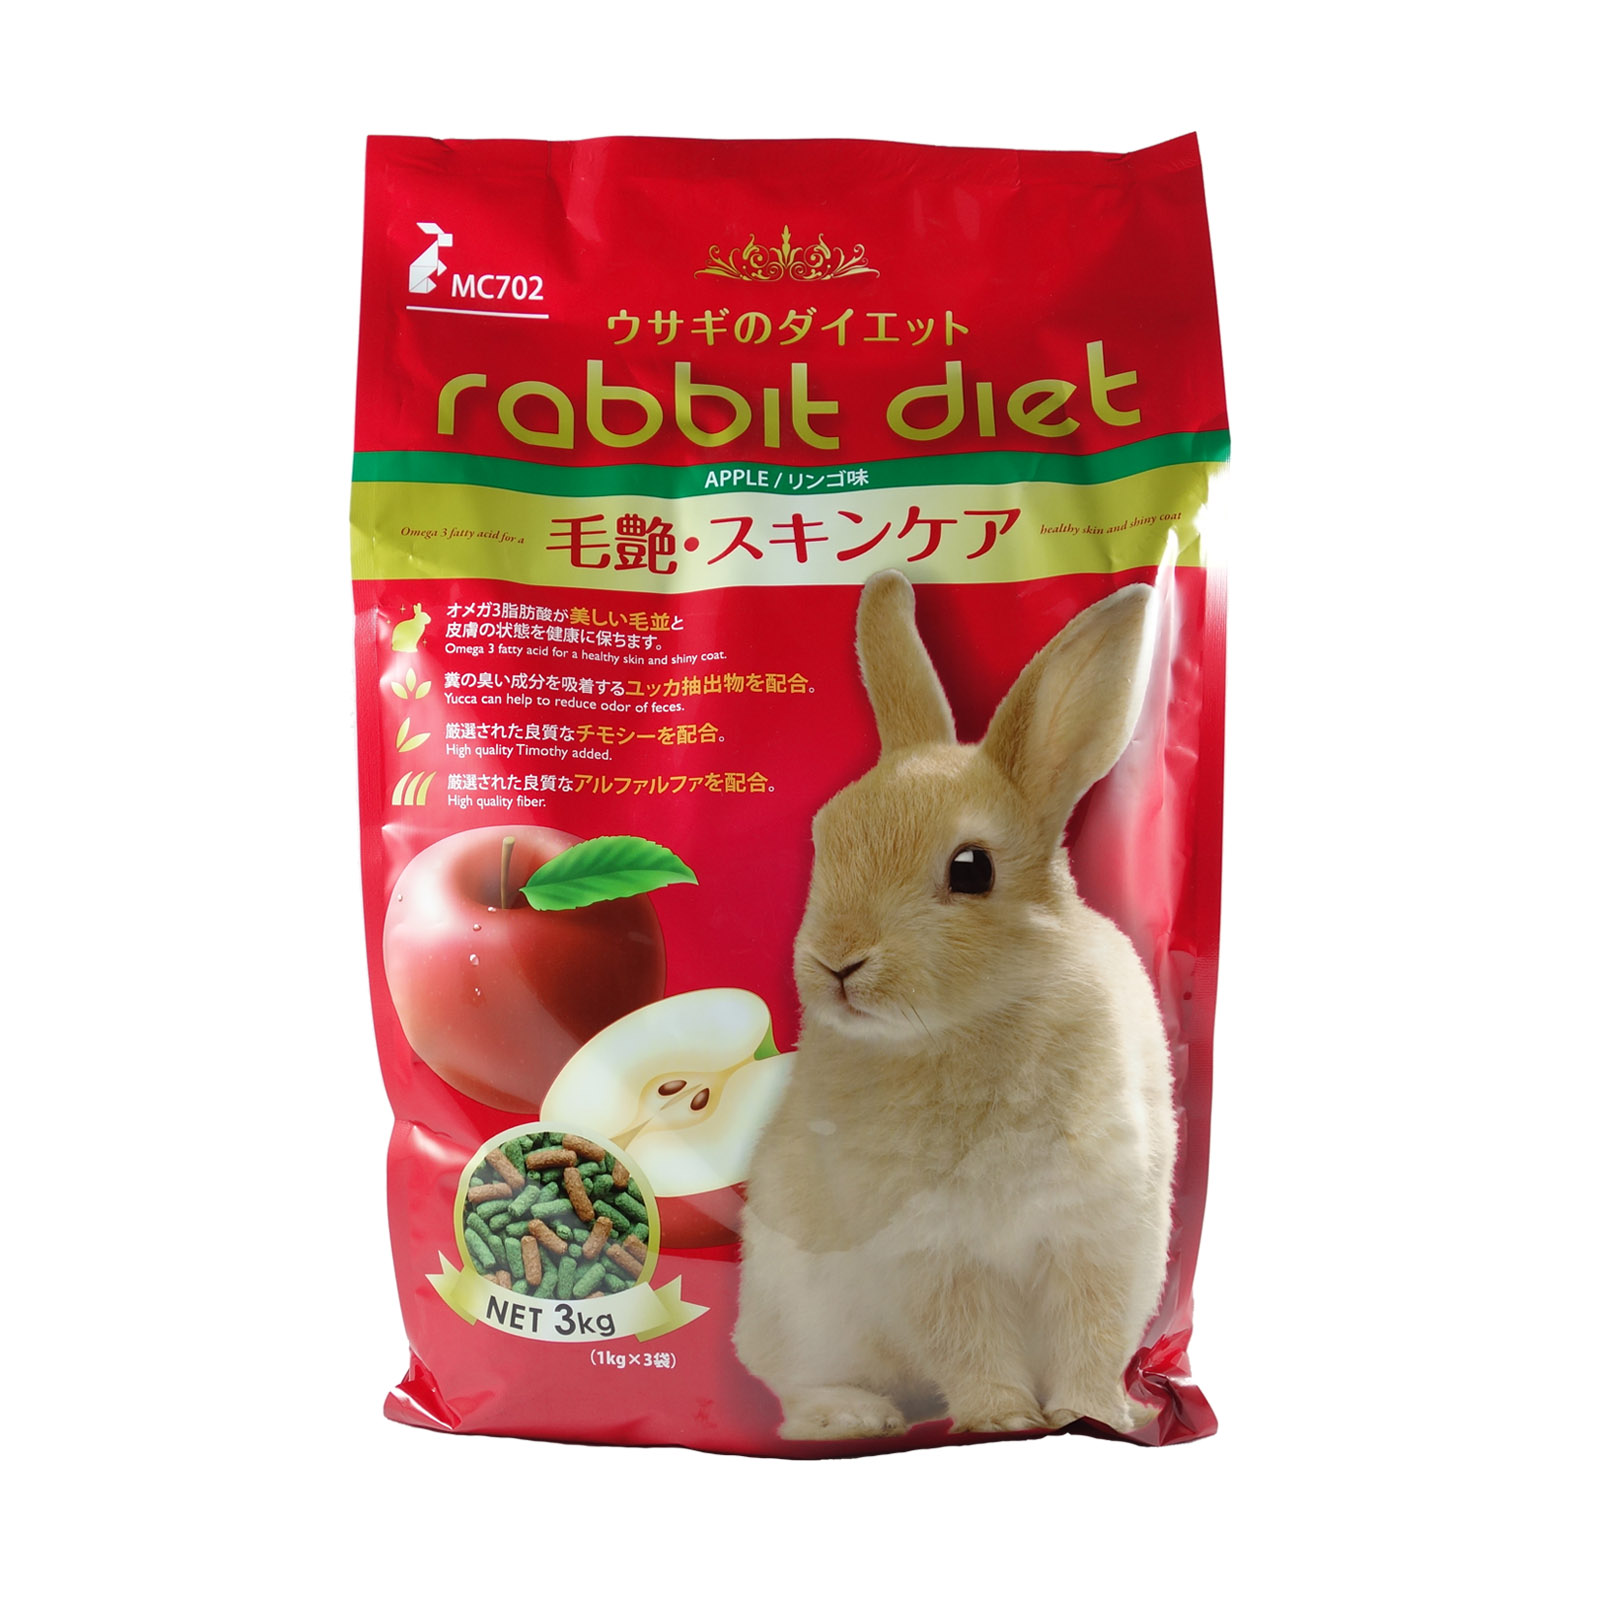 RABBIT DIET Pet